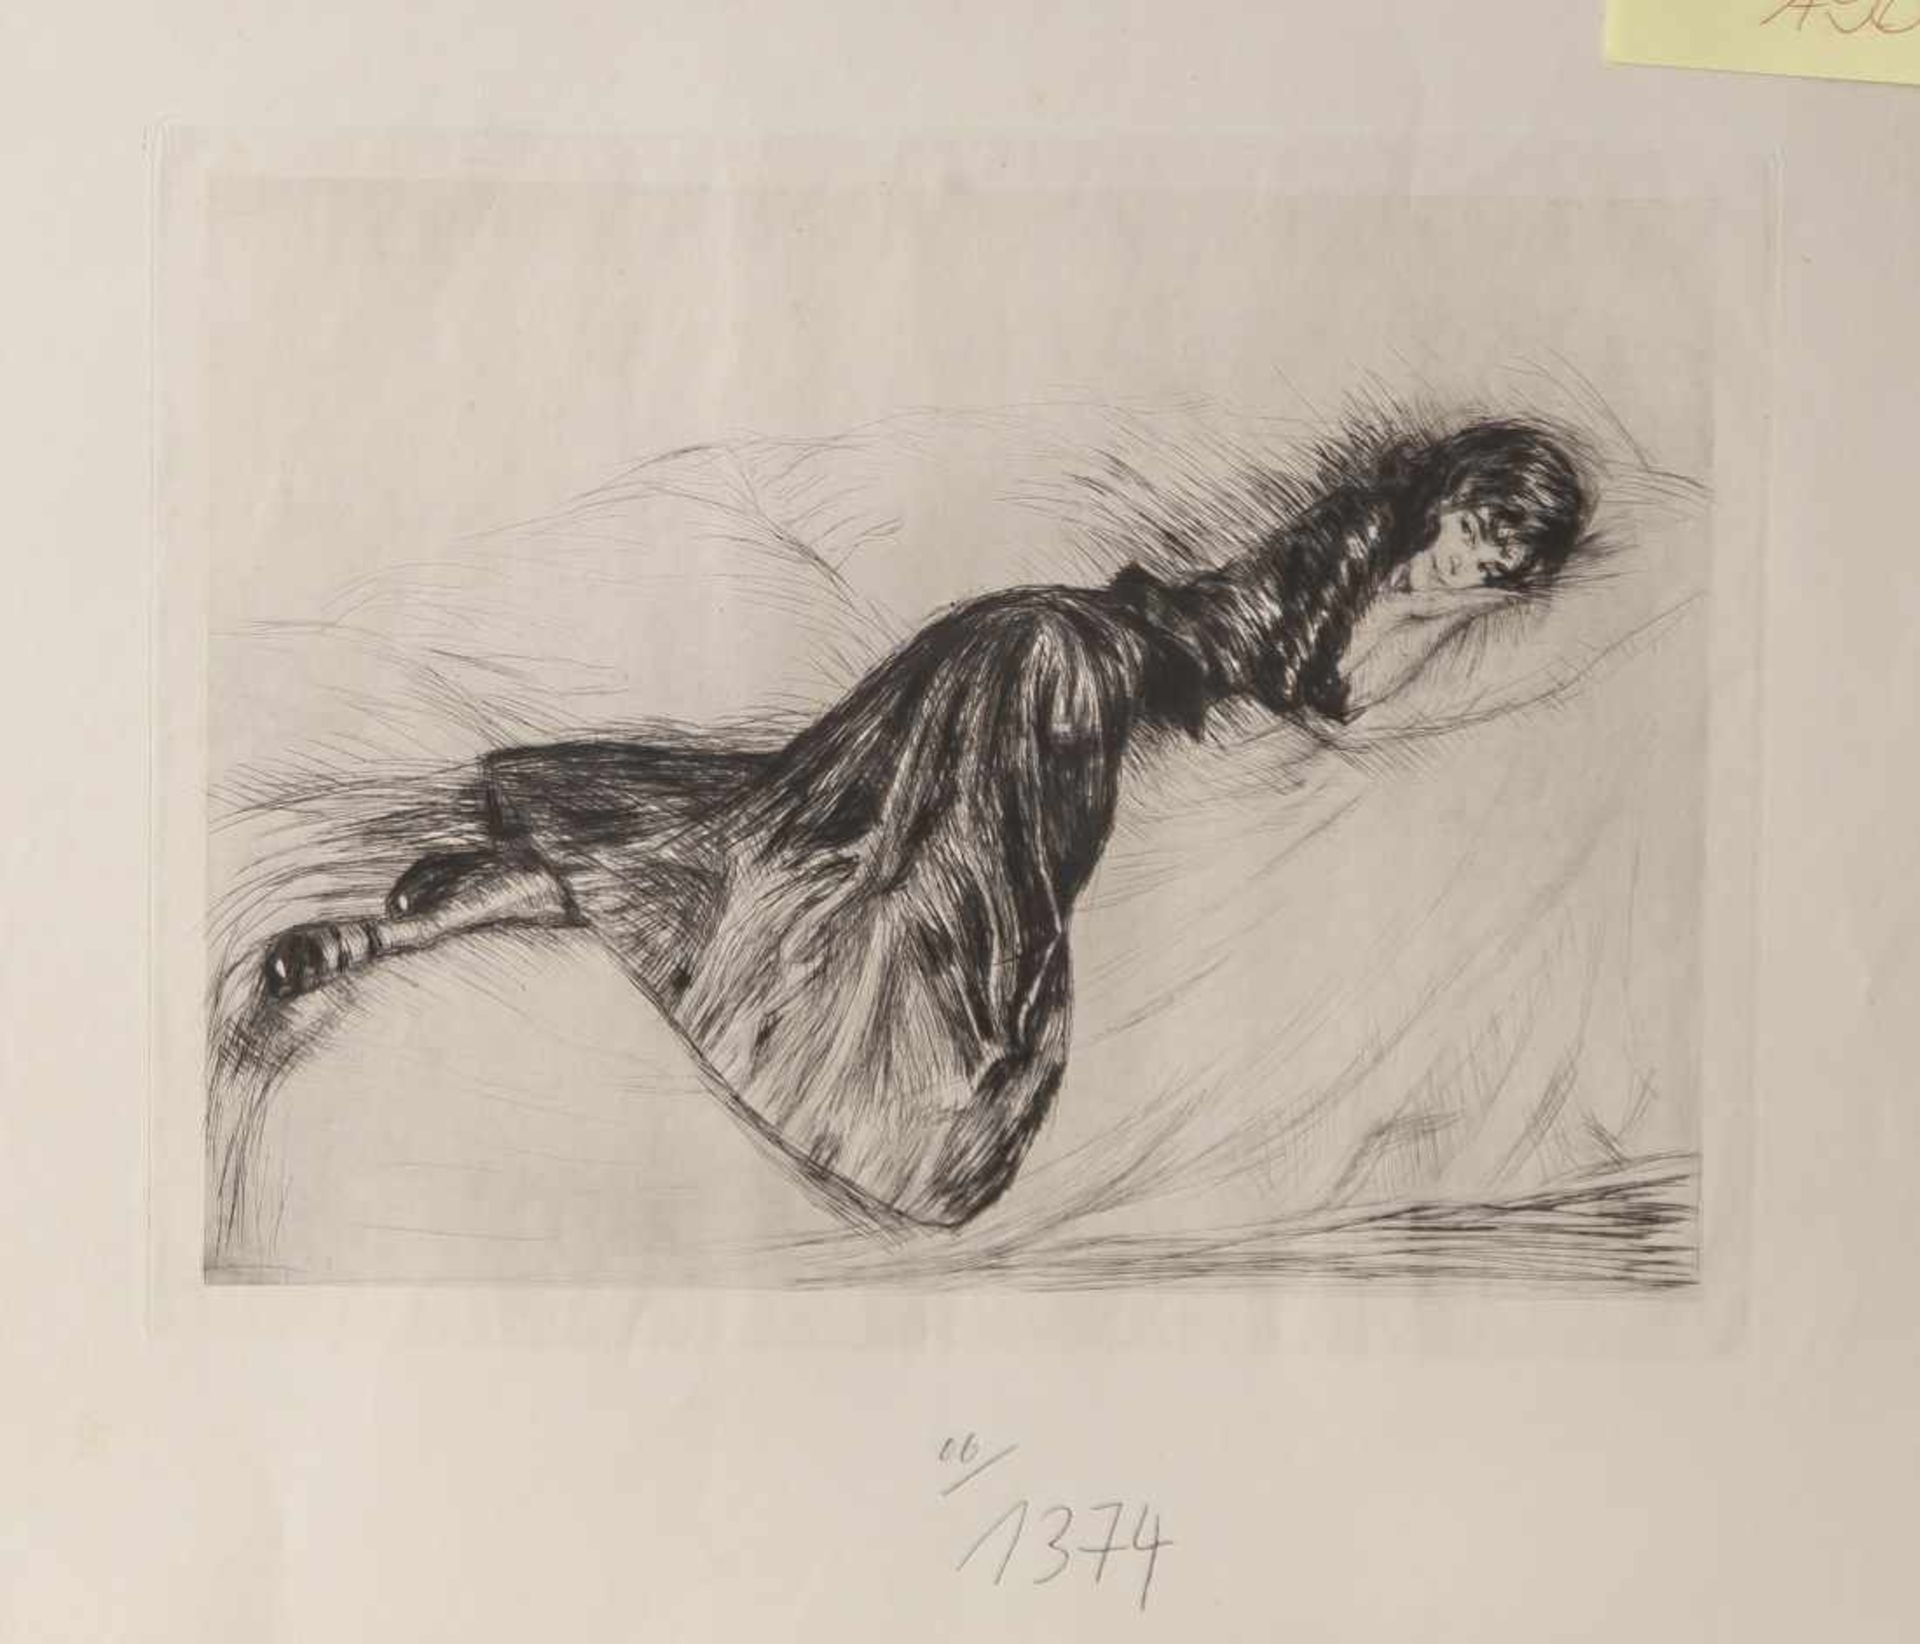 Götze, Otto (1868-1931), "Anni", Radierung, rs. sign. u. bez., ca. 21,5 x 28 cm, ungerahmt. Leicht